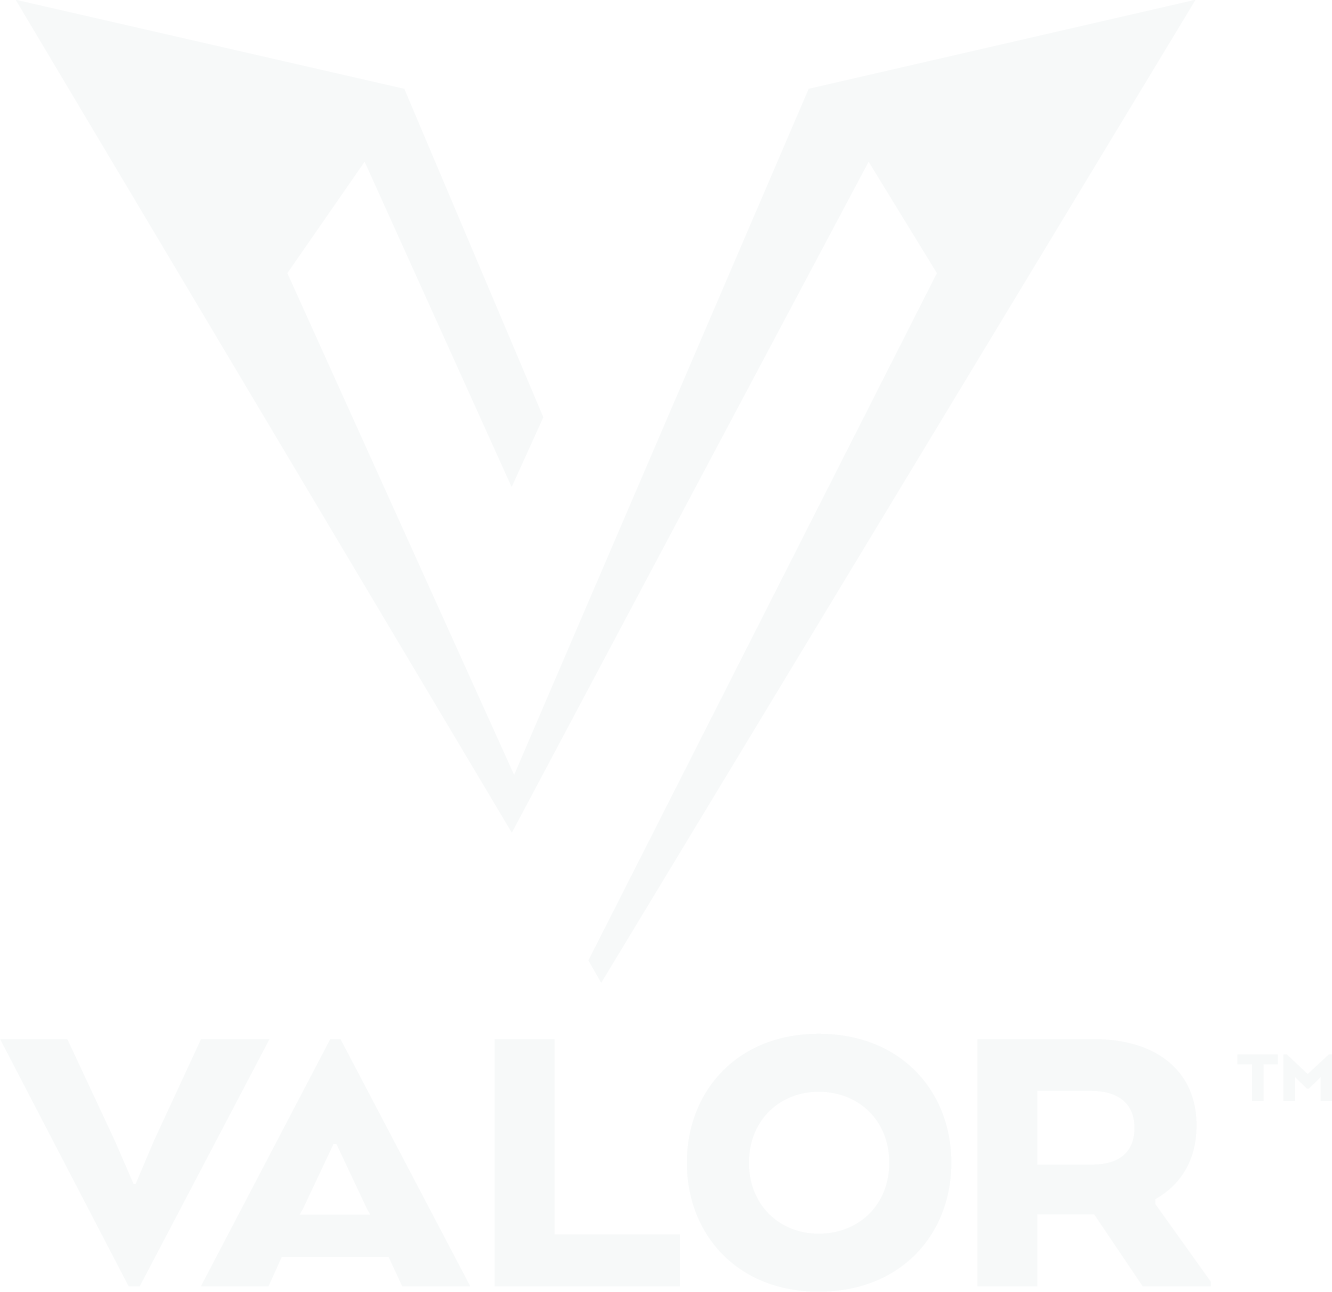 White Valor Logo
